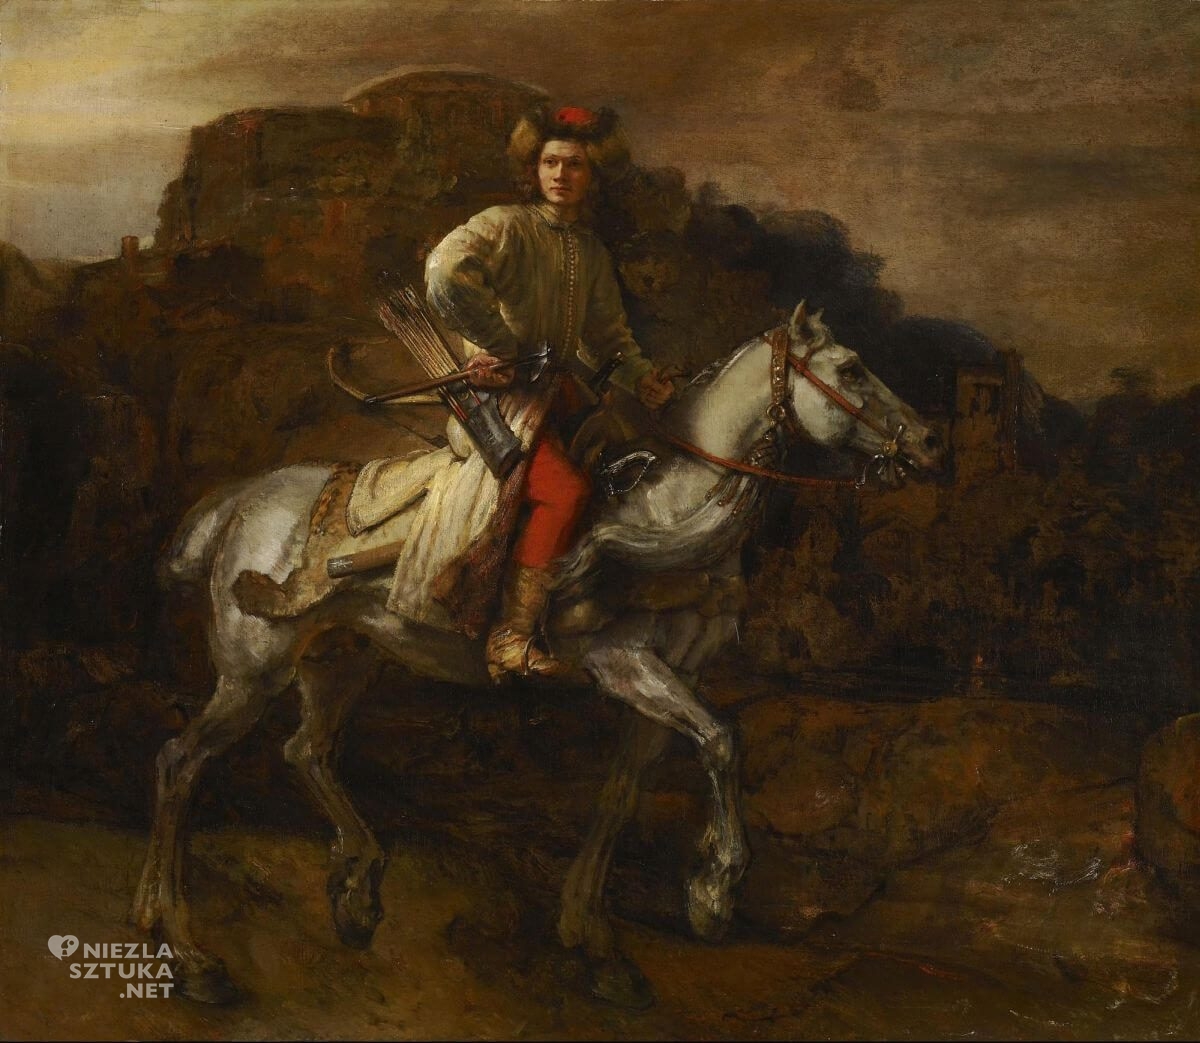 Rembrandt, Jeździec polski, Lisowczyk, Łazienki Królewskie, wystawa, Pałac na wyspie, The Frick Collection, niezła sztuka 